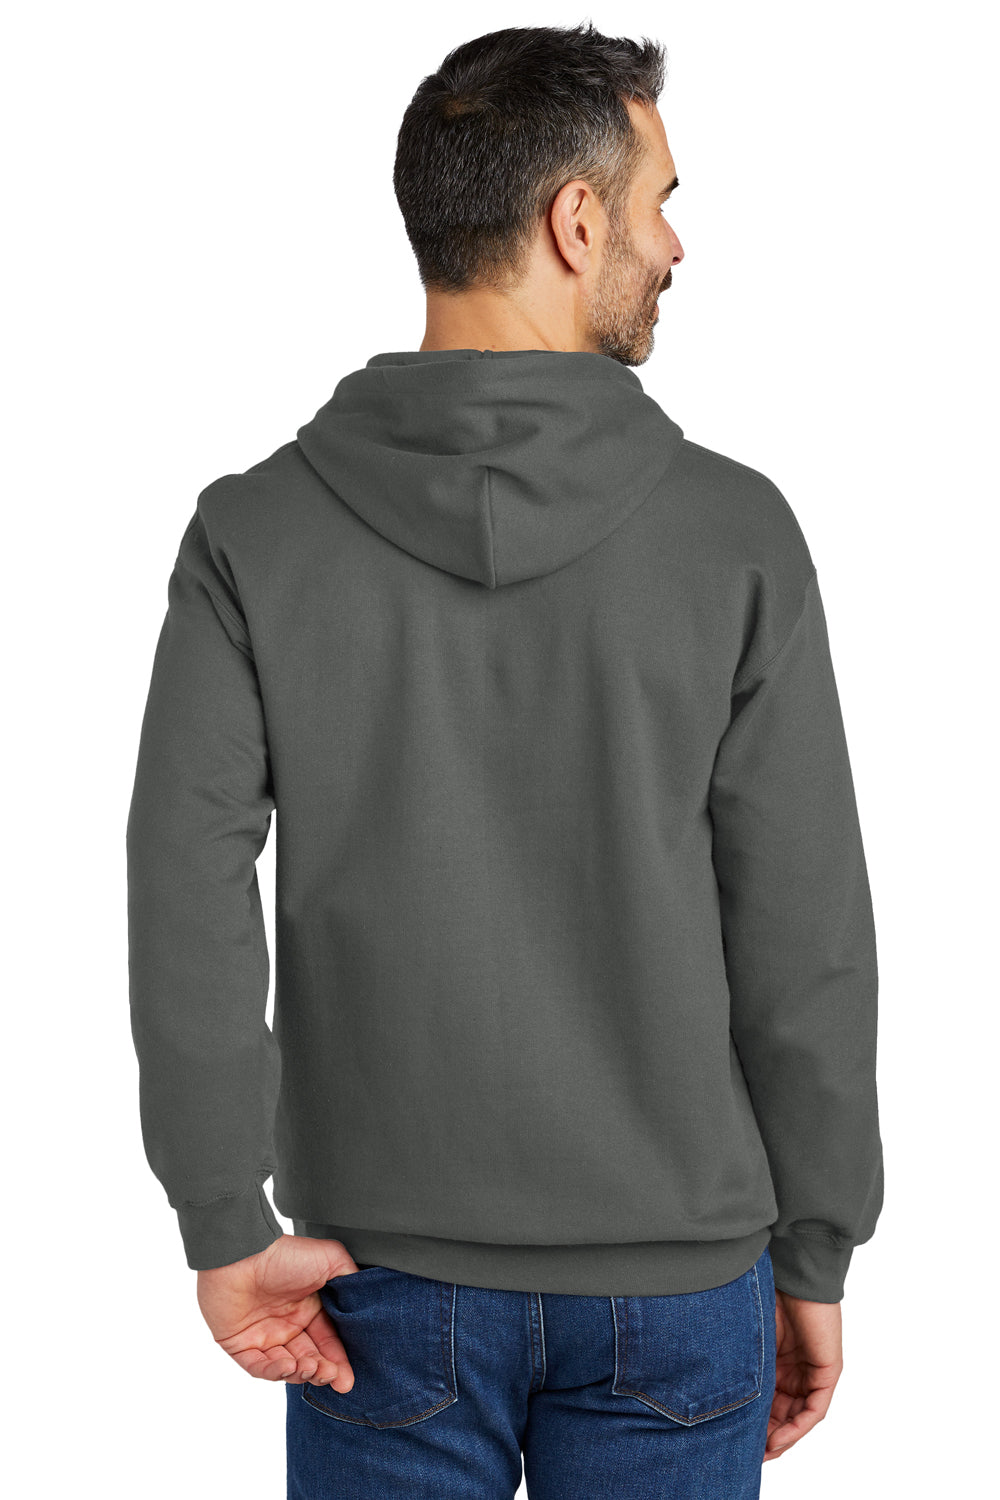 Gildan SF500 Softstyle Hooded Sweatshirt Hoodie Charcoal Grey Back